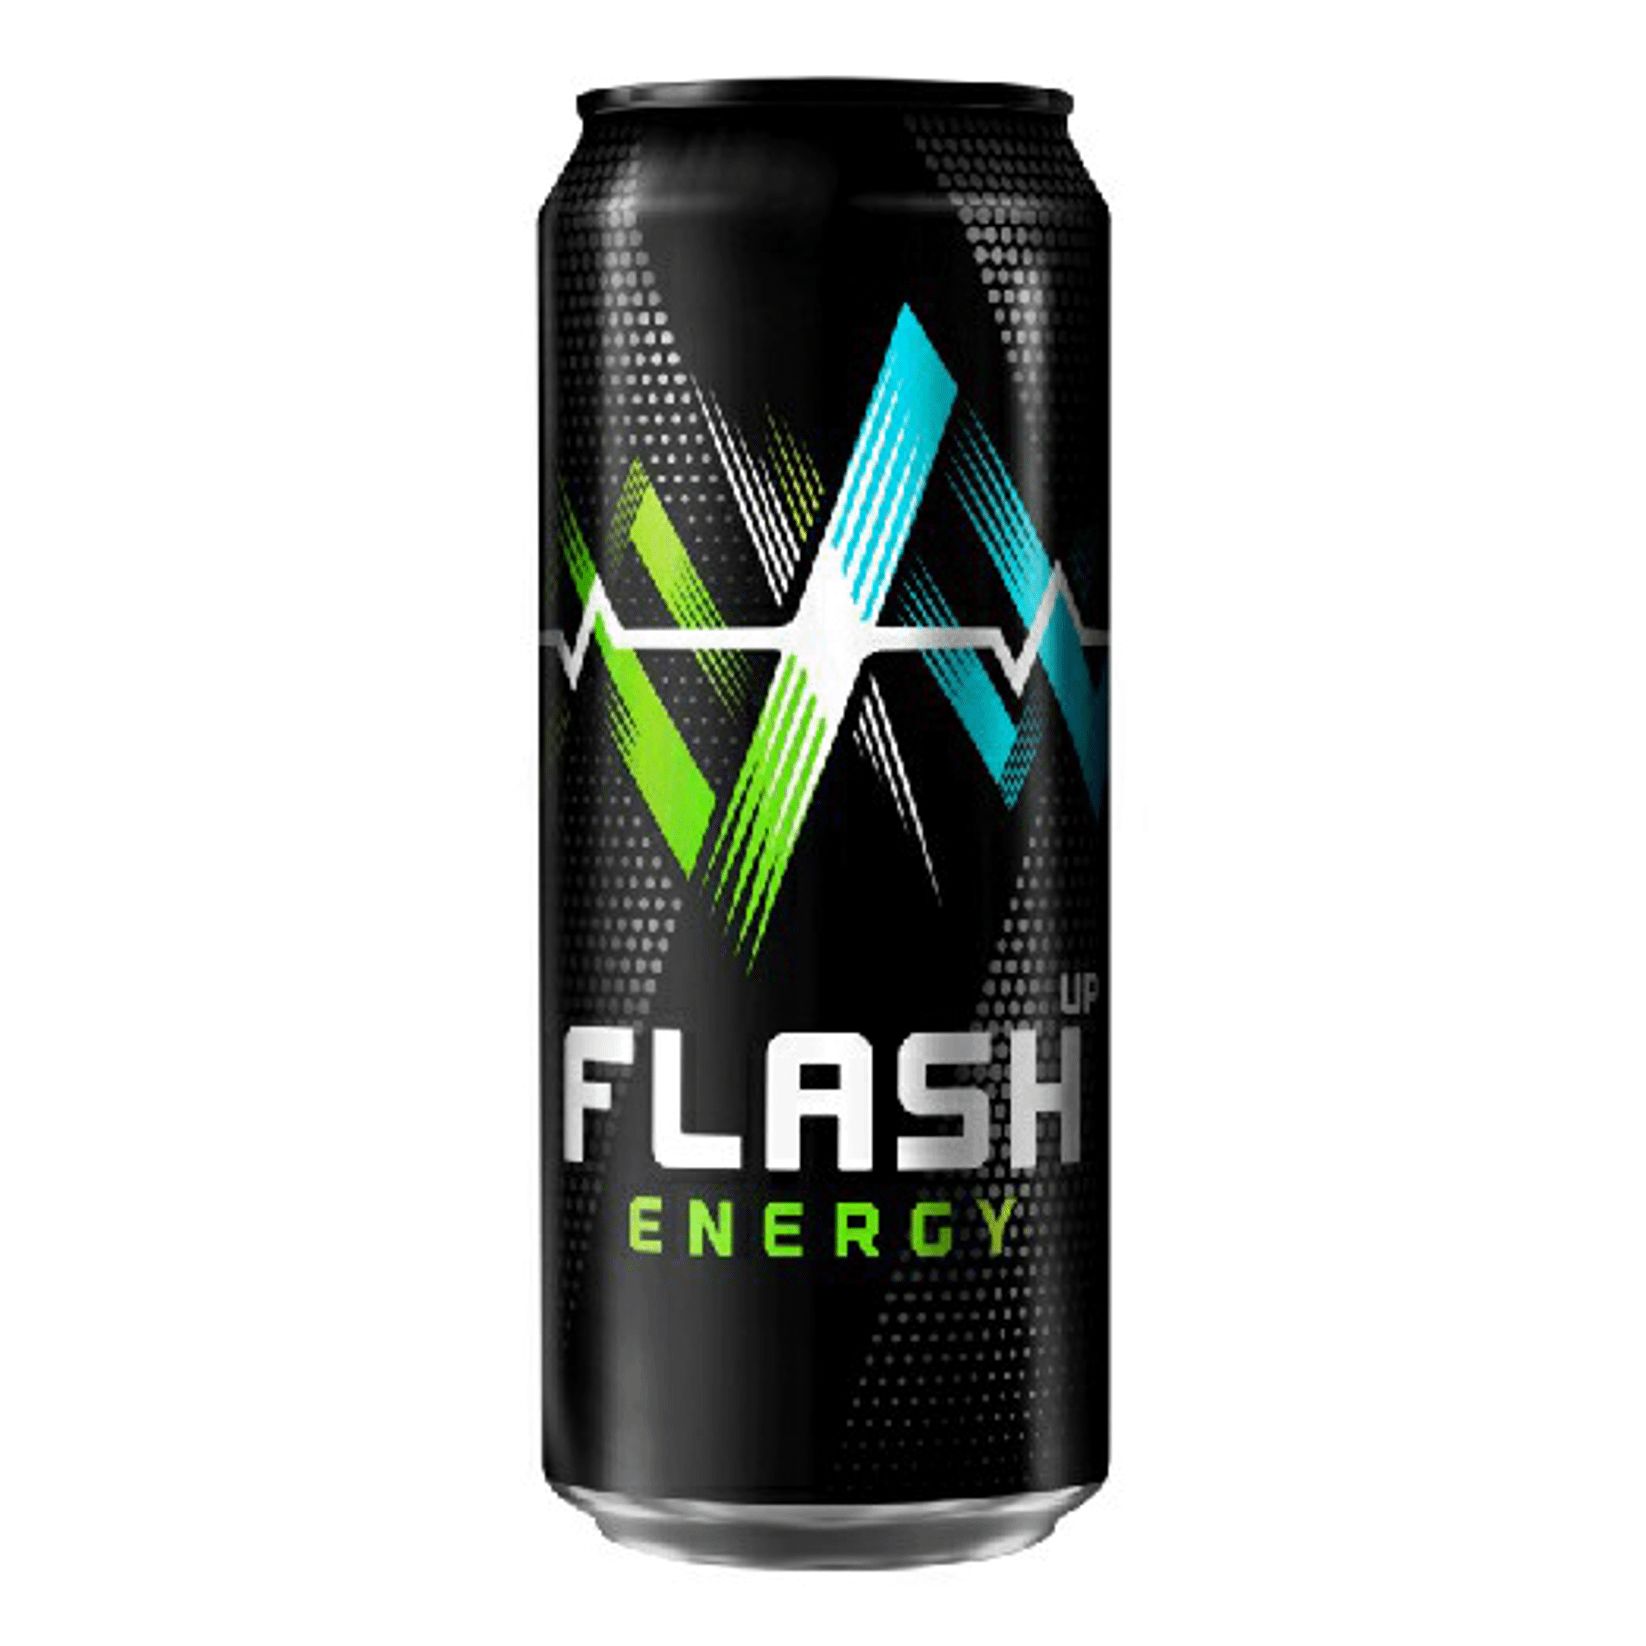 Флэш энергетики цена. Flash up Energy ультра 0,45л ж/б *24. Энергетический напиток Flash up Energy Ultra ж/б. 0,45л. Энергетический напиток флэш ап 0,45 л. Энергетик флеш ап Энерджи.